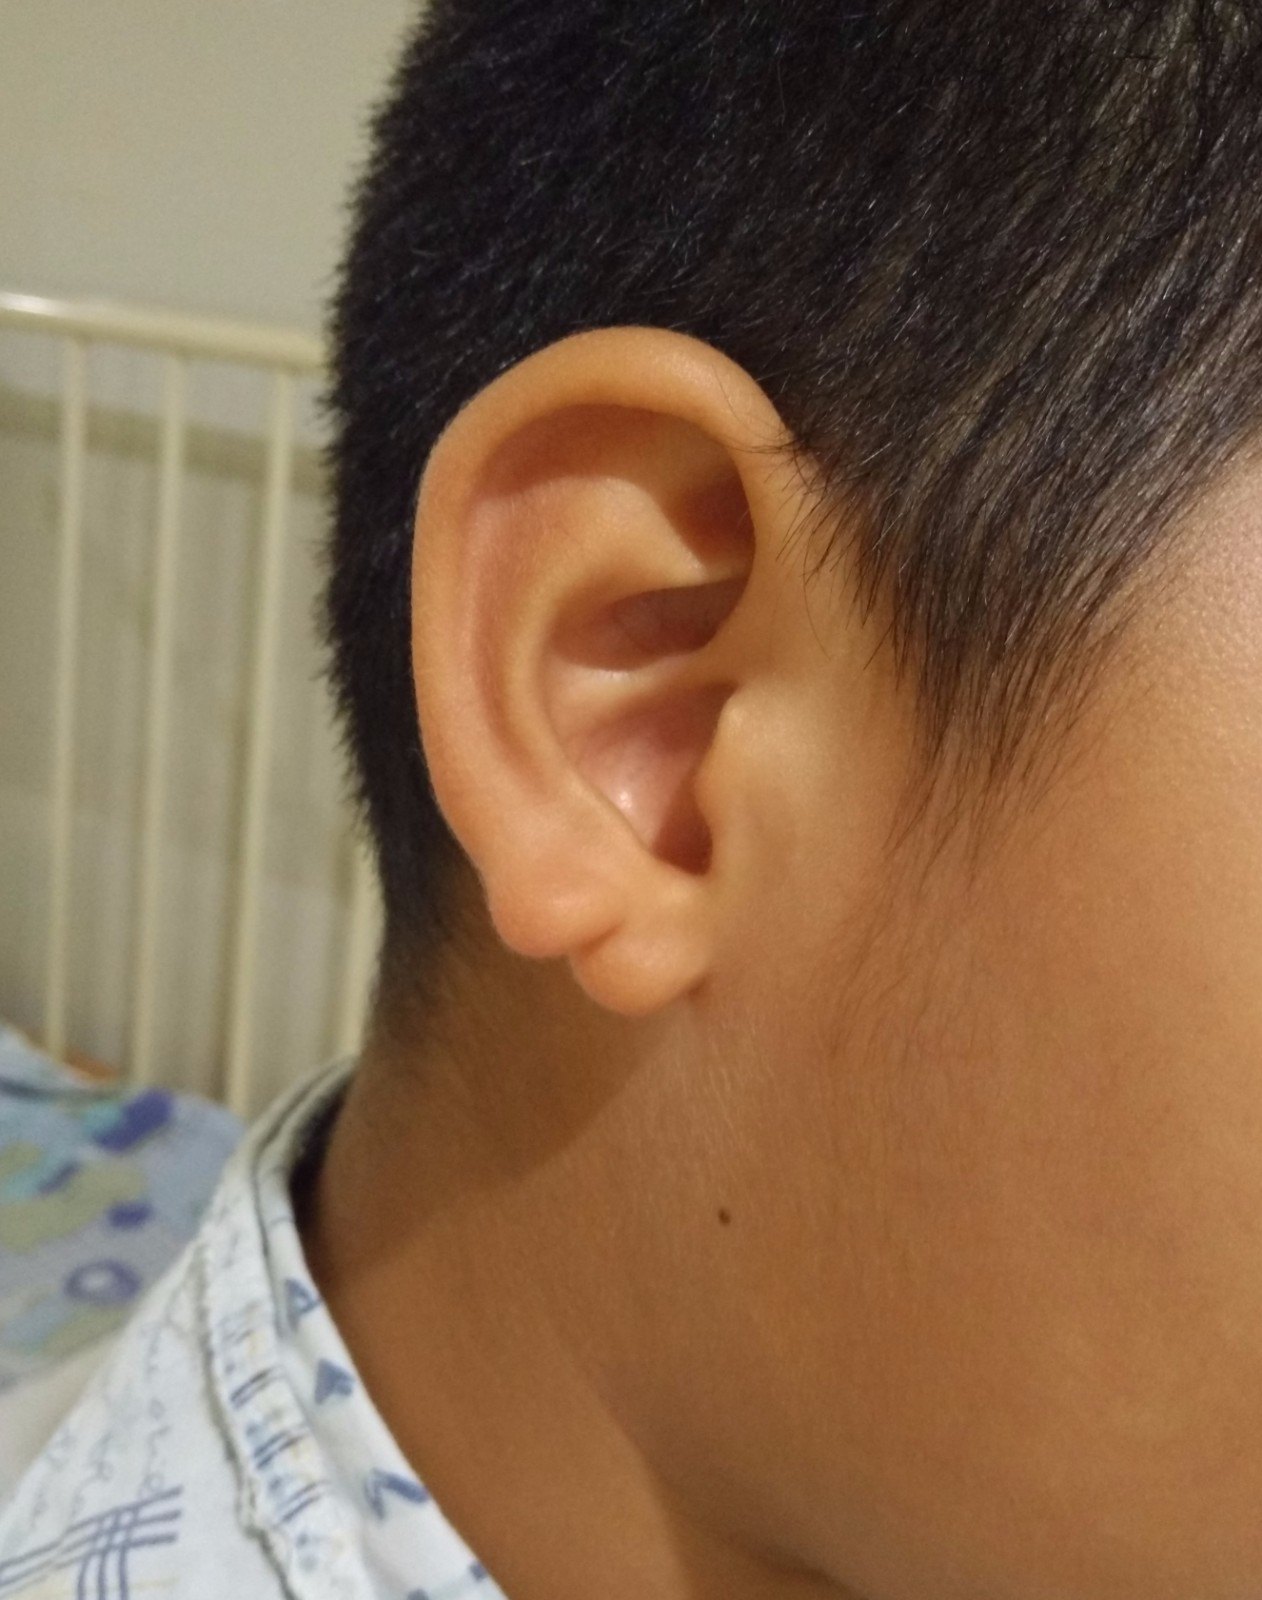 先天性耳垂裂图片